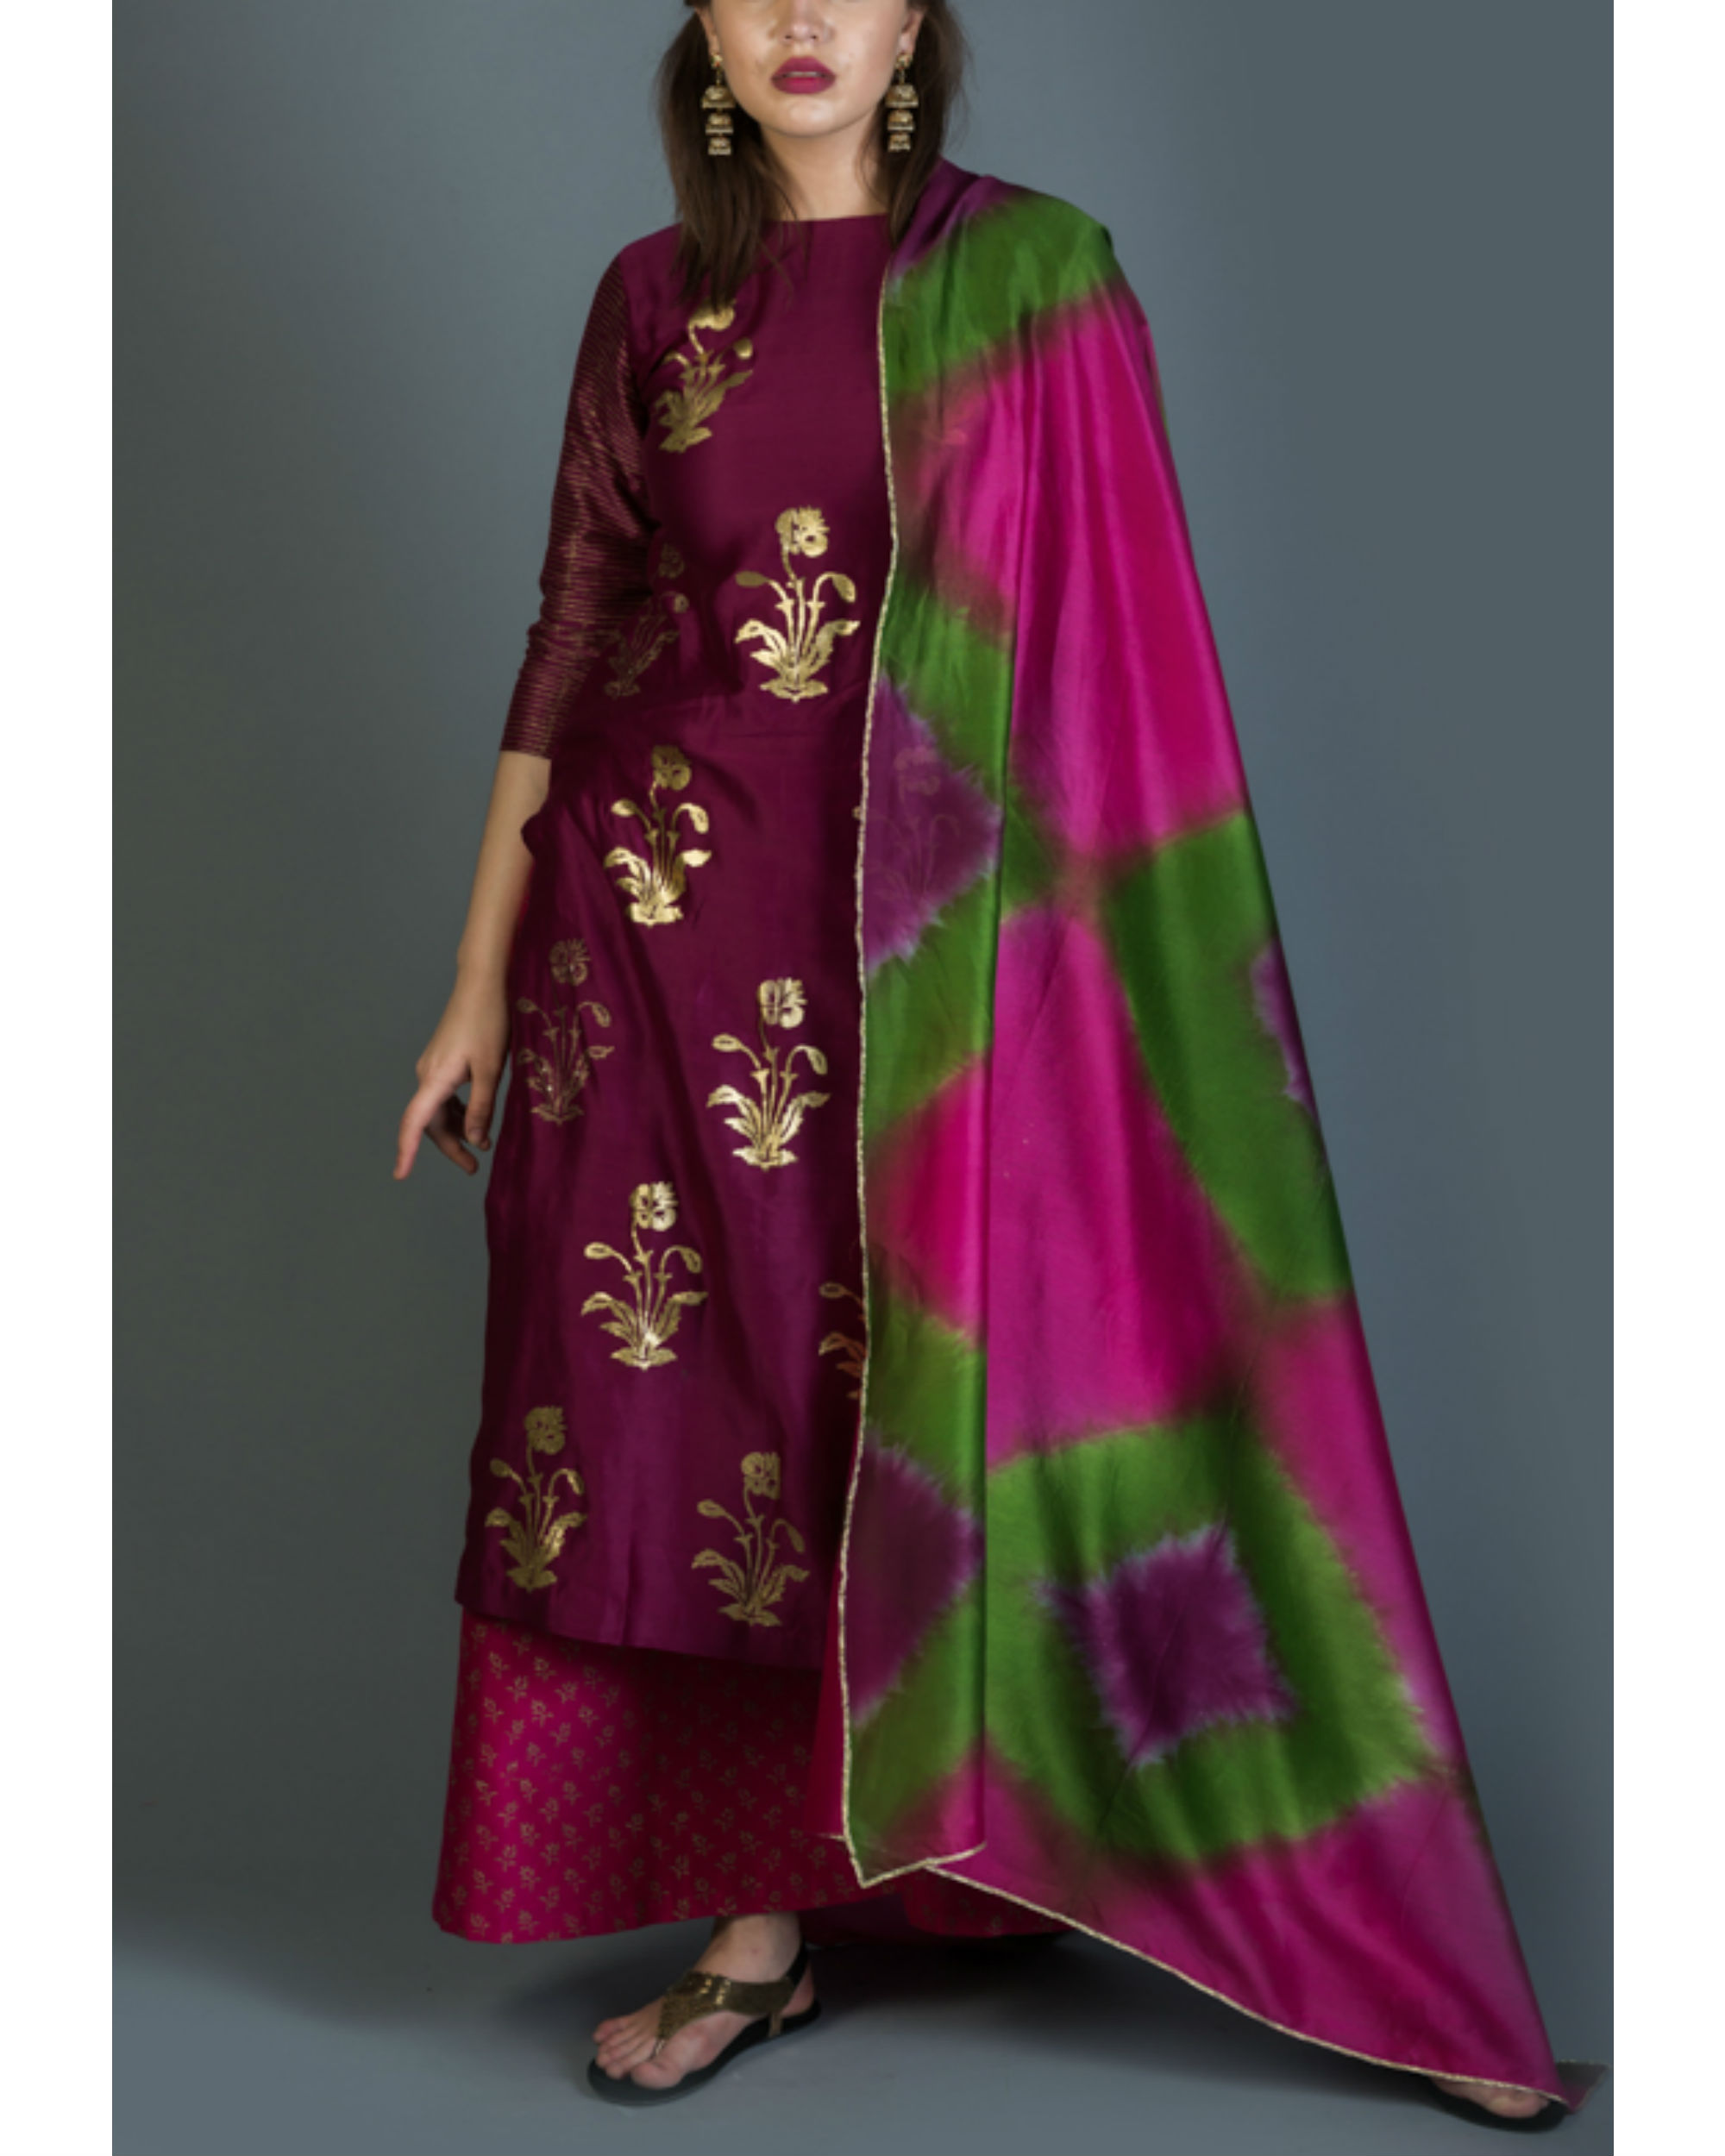 Rangoli kurta set with pink green dupatta by Purple Panchi | The Secret ...